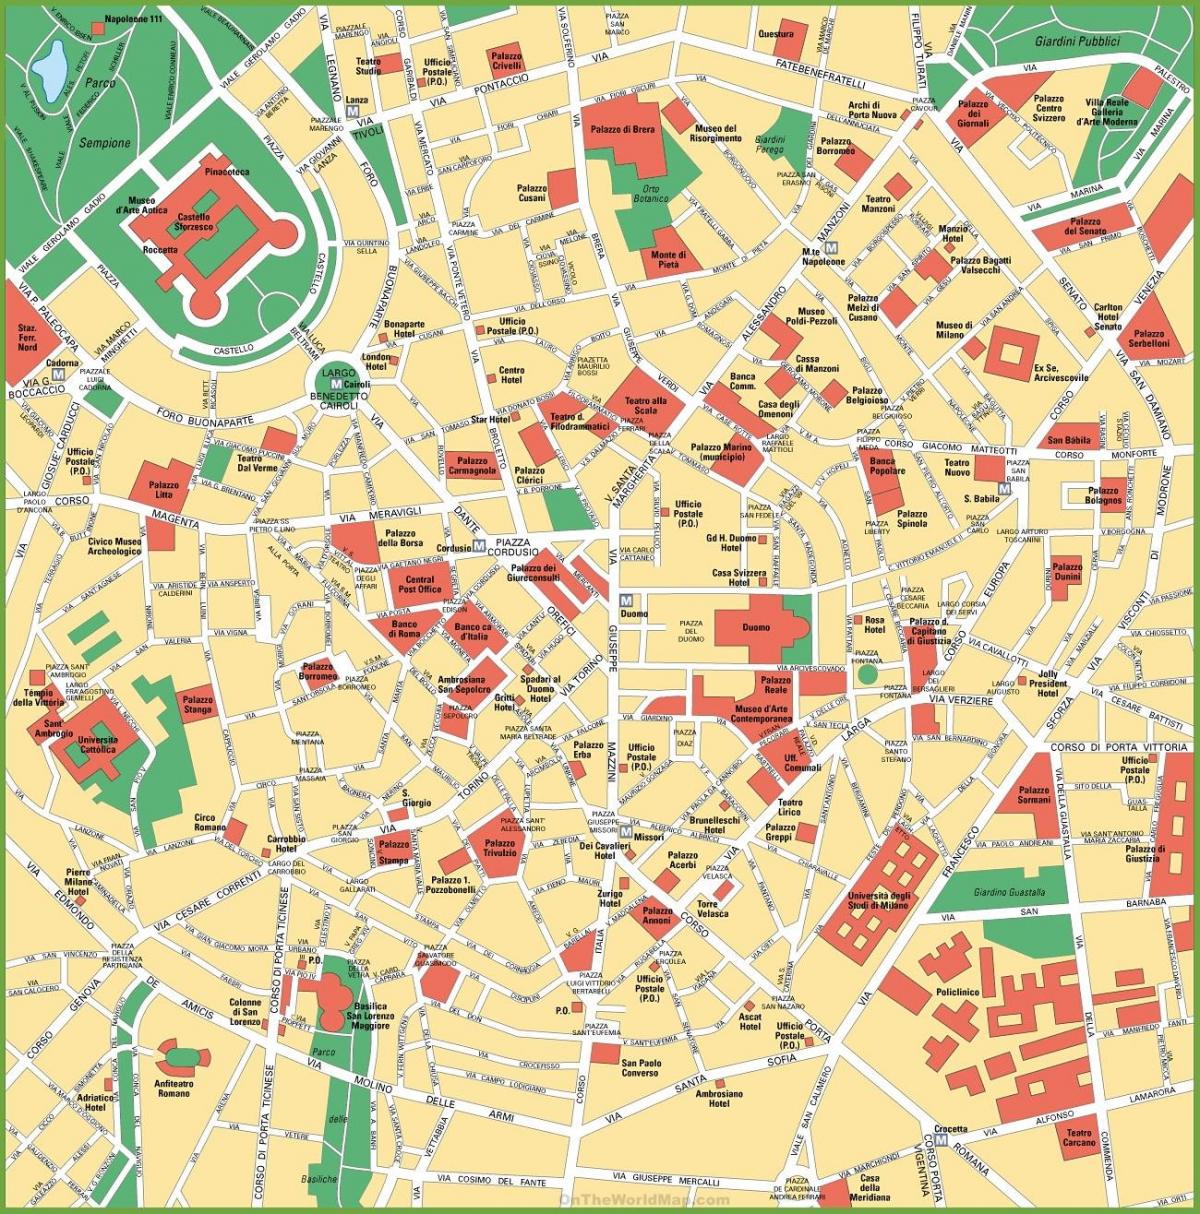 milano city center karta